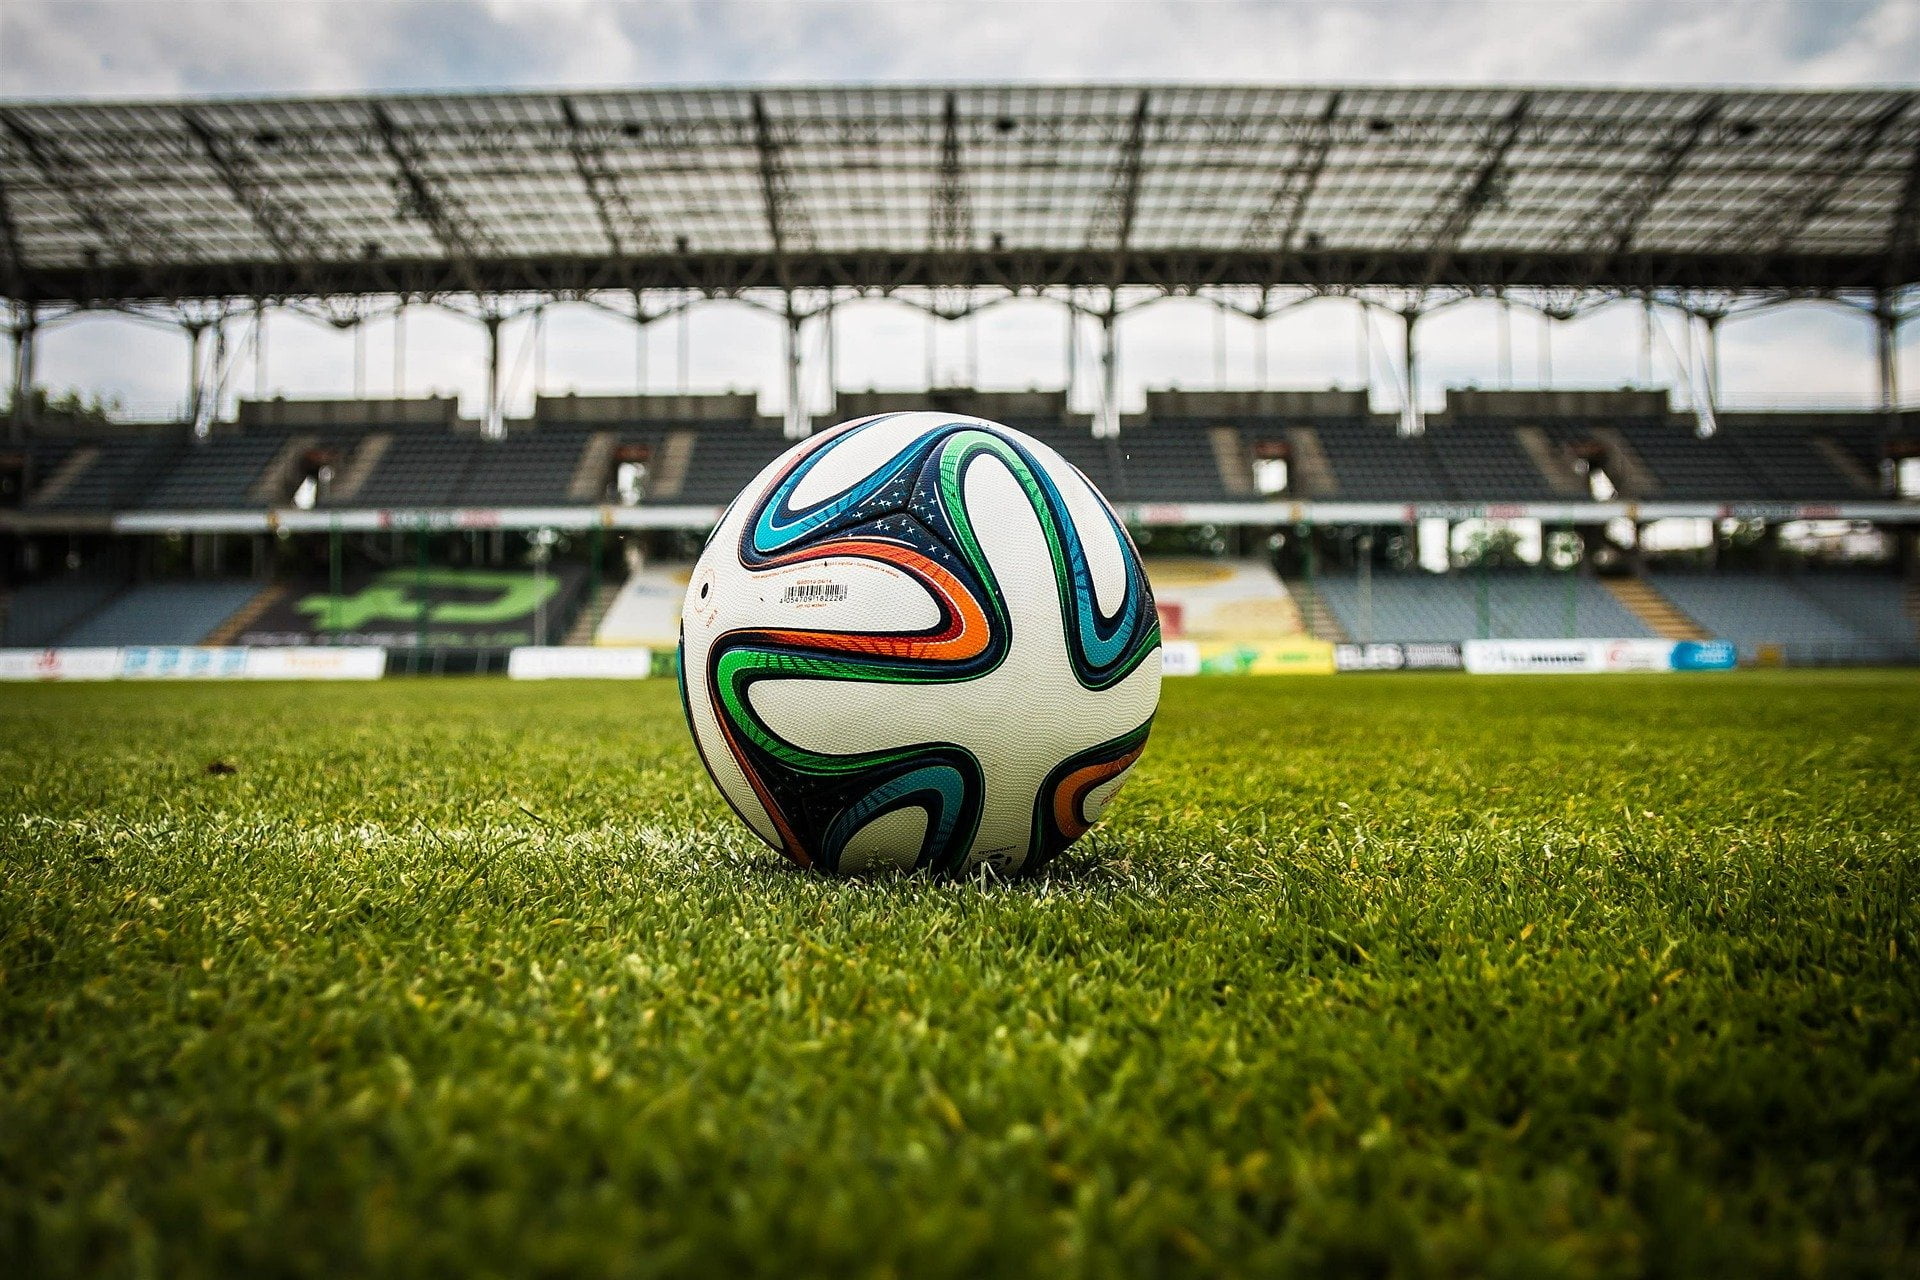 soccer ball, stadium, sports sponsorships